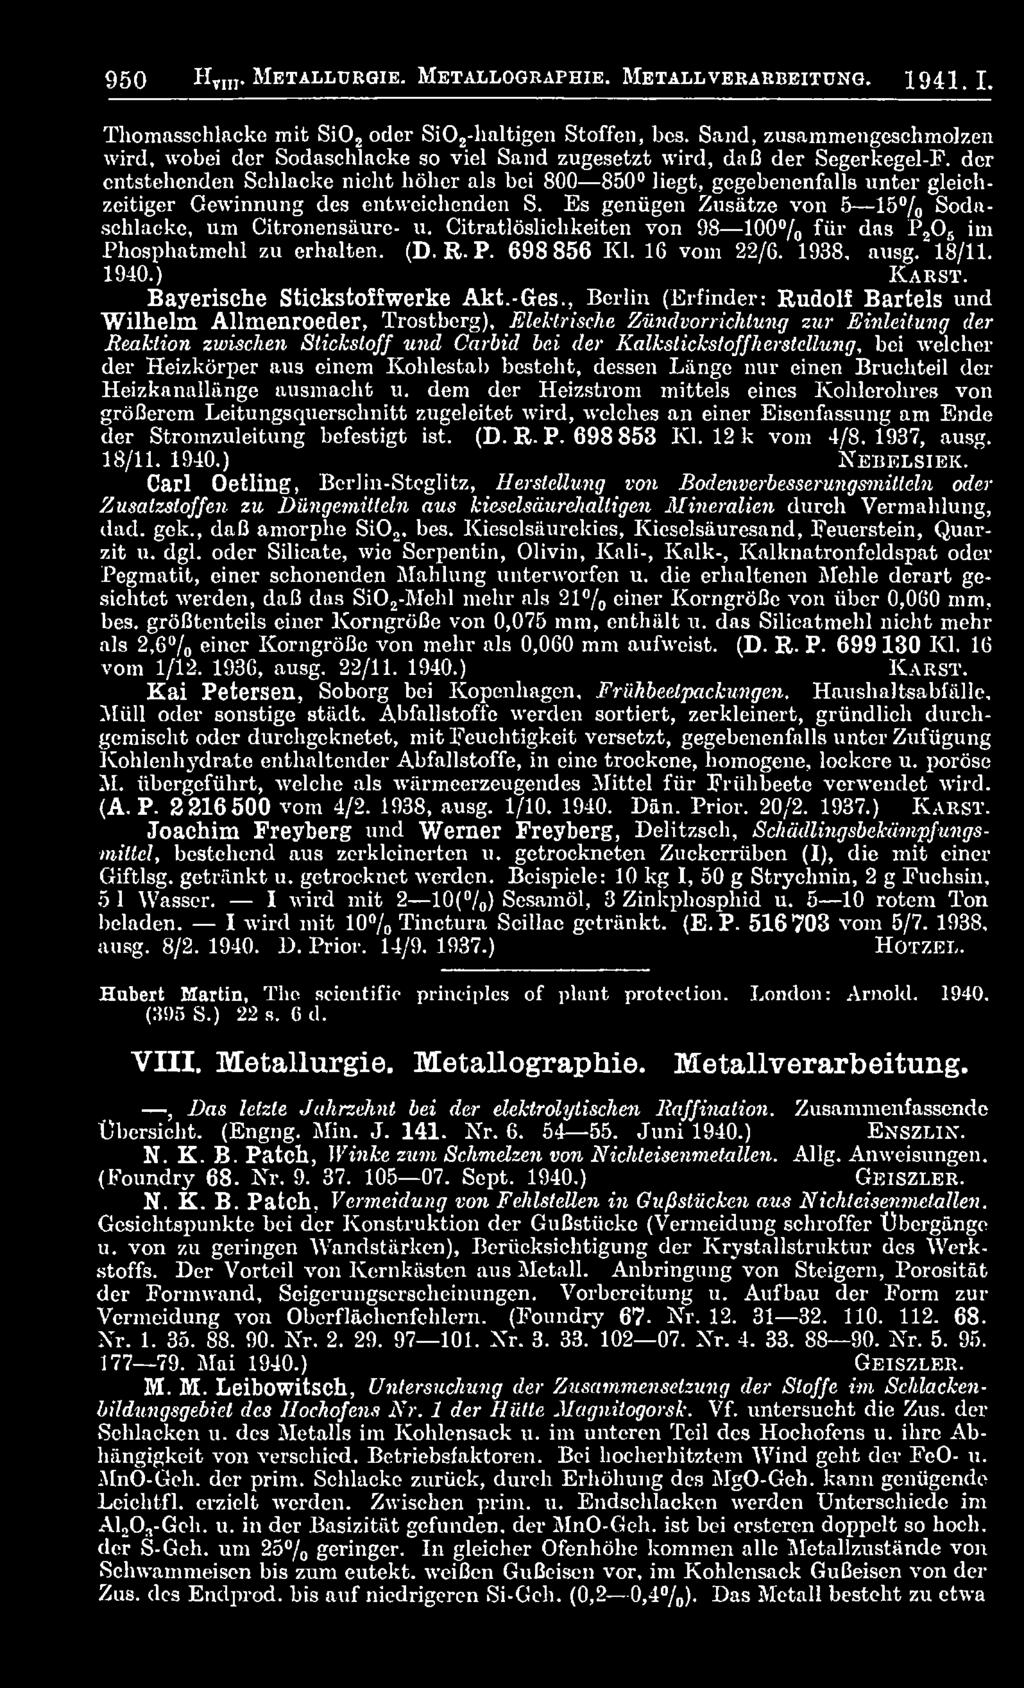 , Berlin (Erfinder: Rudolf Bartels und Wilhelm Allmenroeder, Trostberg), Elektrische Zündvorrichtung zur Einleitung der Reaktion zwischen Stickstoff und Carbid bei der Kalkstickstoffherstellung, bei